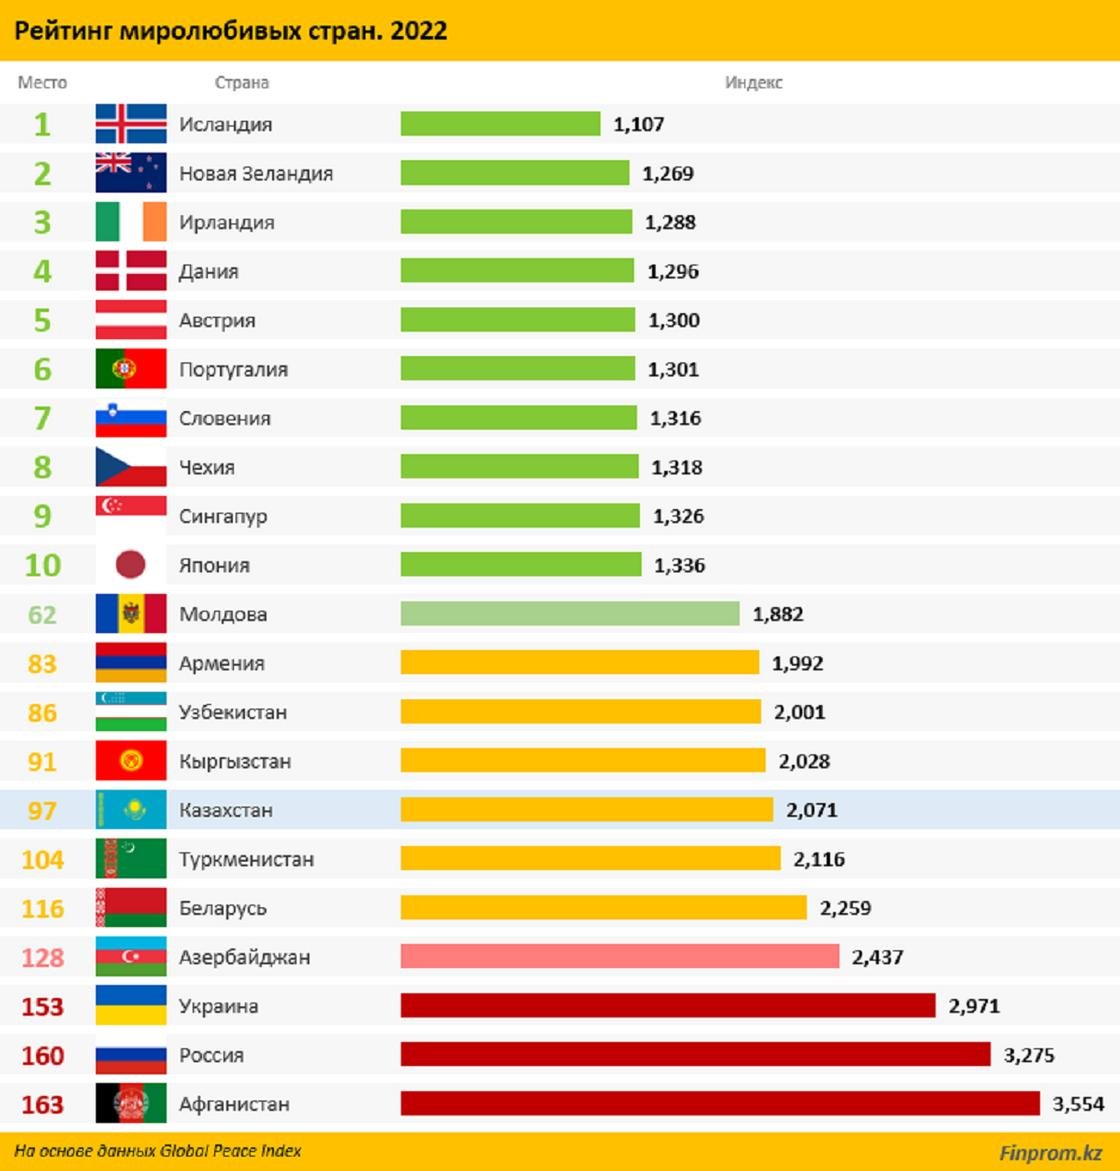 Население страны 2022 россия. Мировые рейтинги стран. Топ стран. Самые популярные страны. Список стран по дейтинг.